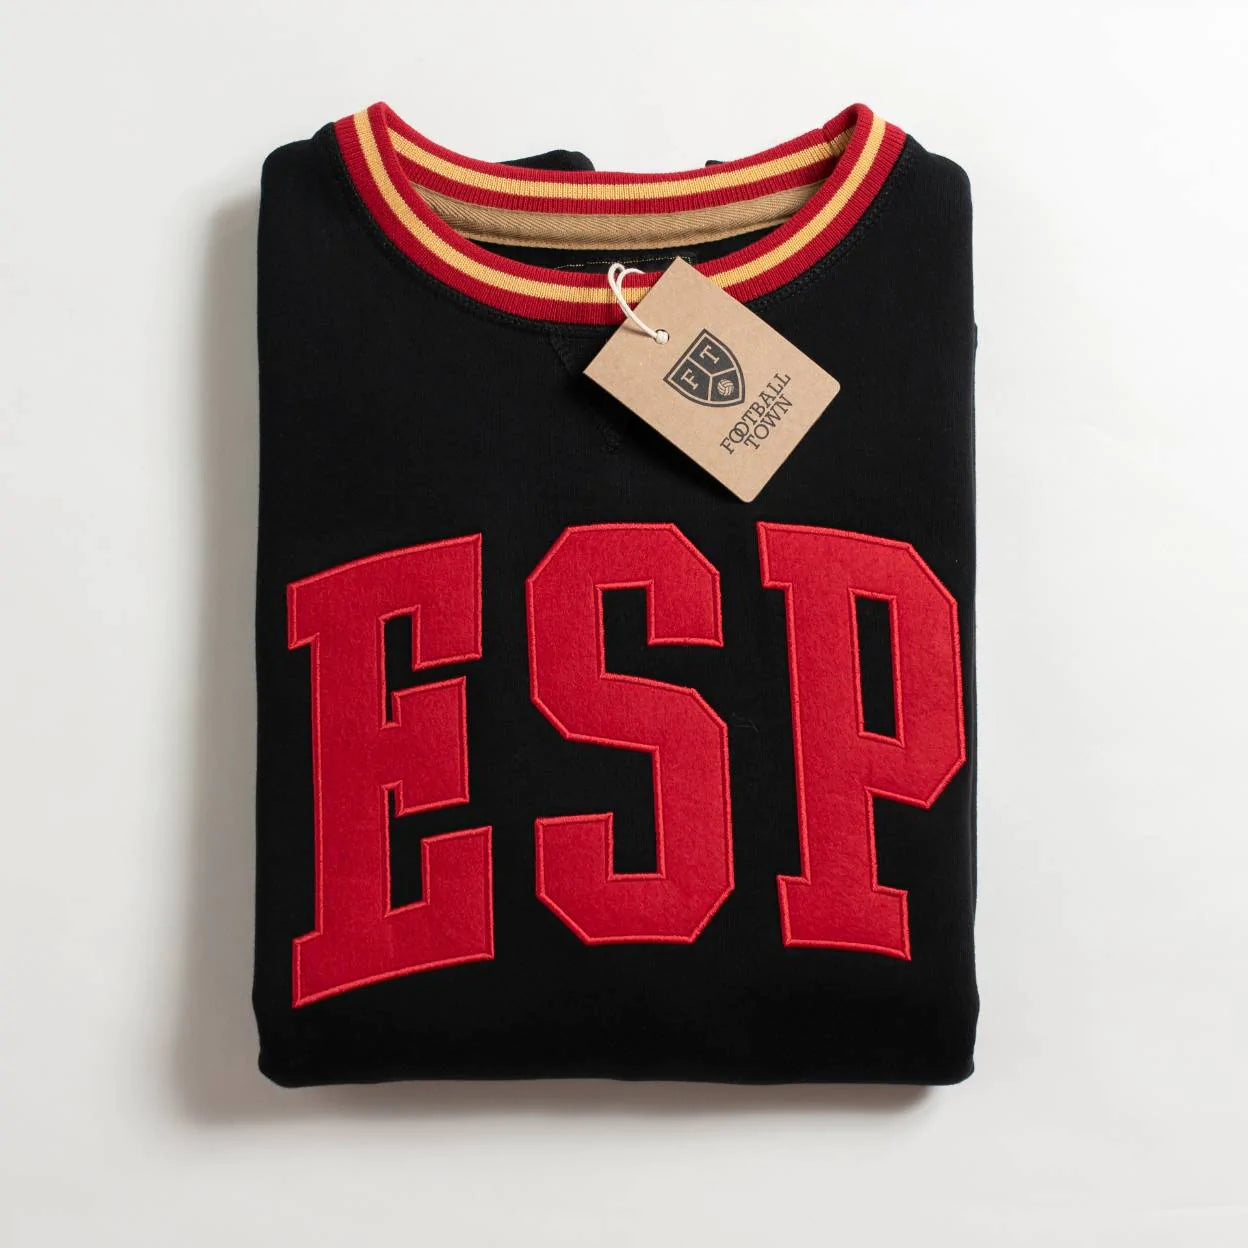 Sweatshirt ESP